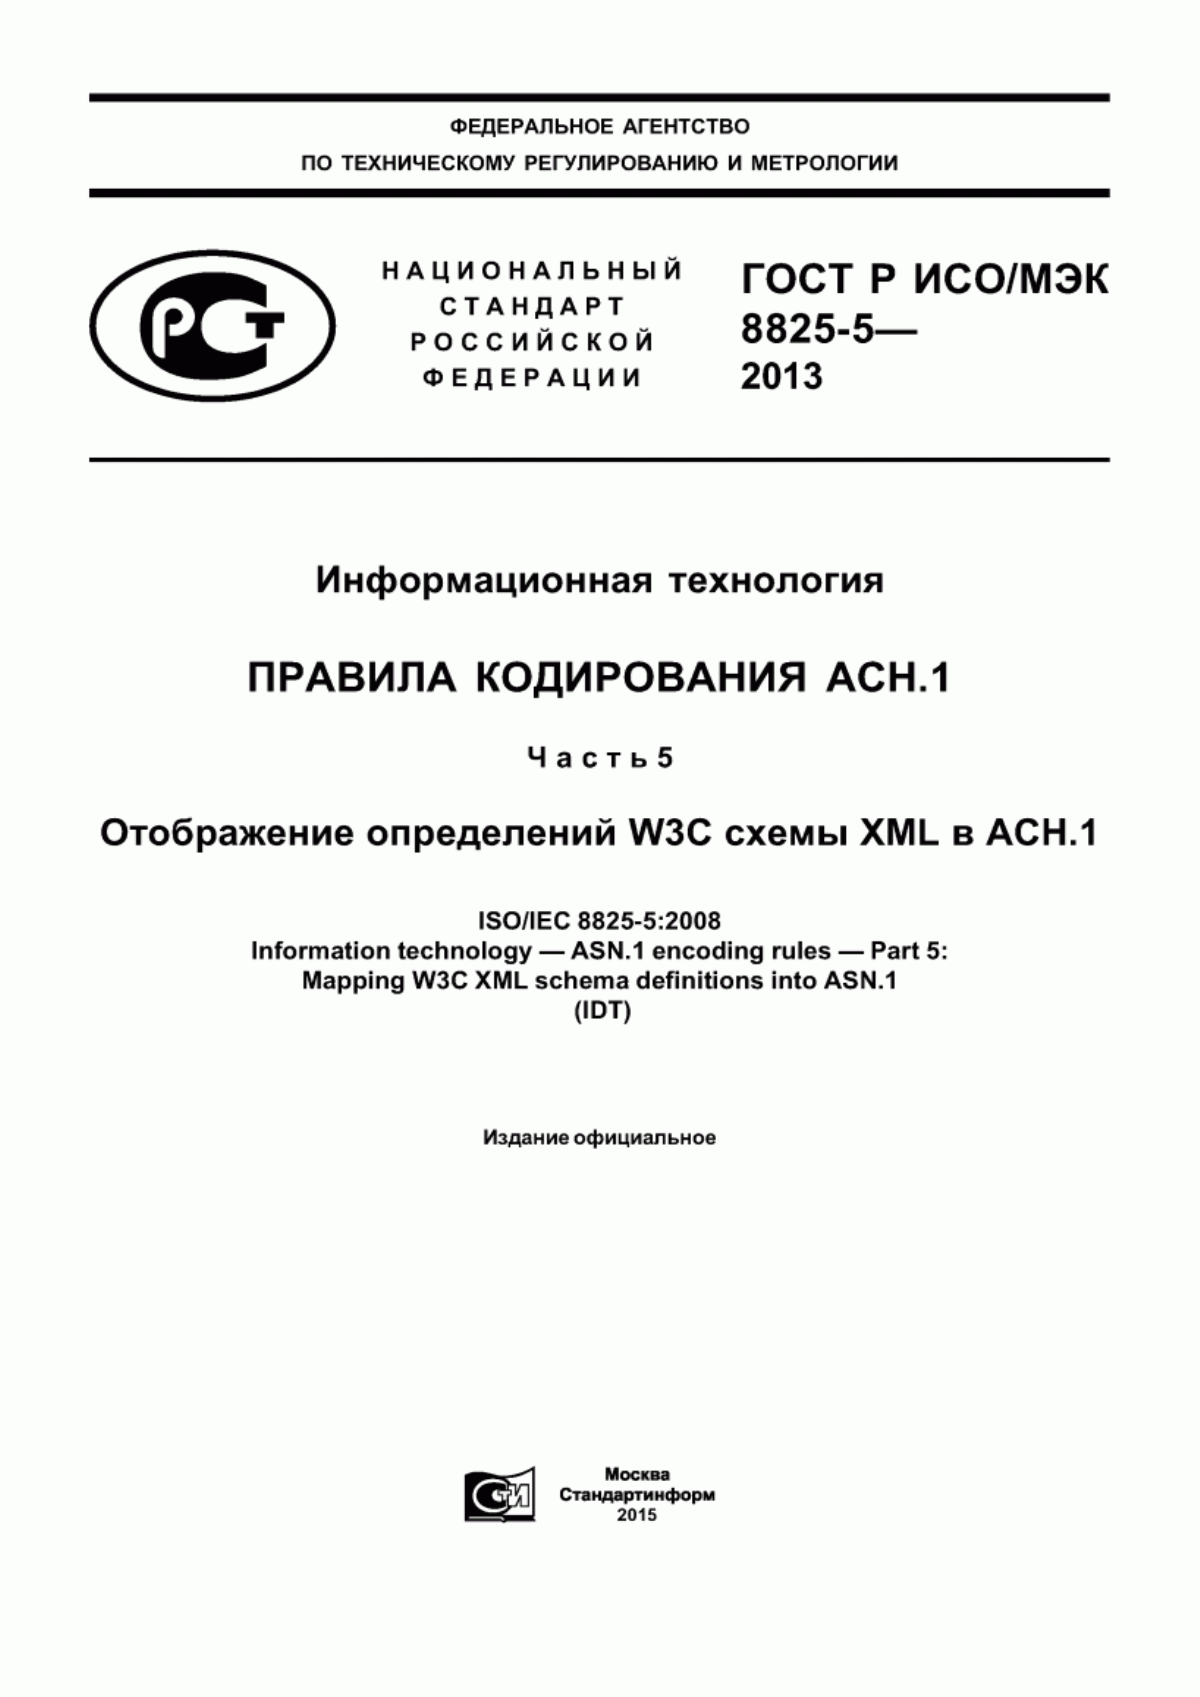 ГОСТ Р ИСО/МЭК 8825-5-2013 Информационная технология. Правила кодирования AСН.1. Часть 5. Отображение определений W3C схемы XML в AСН.1